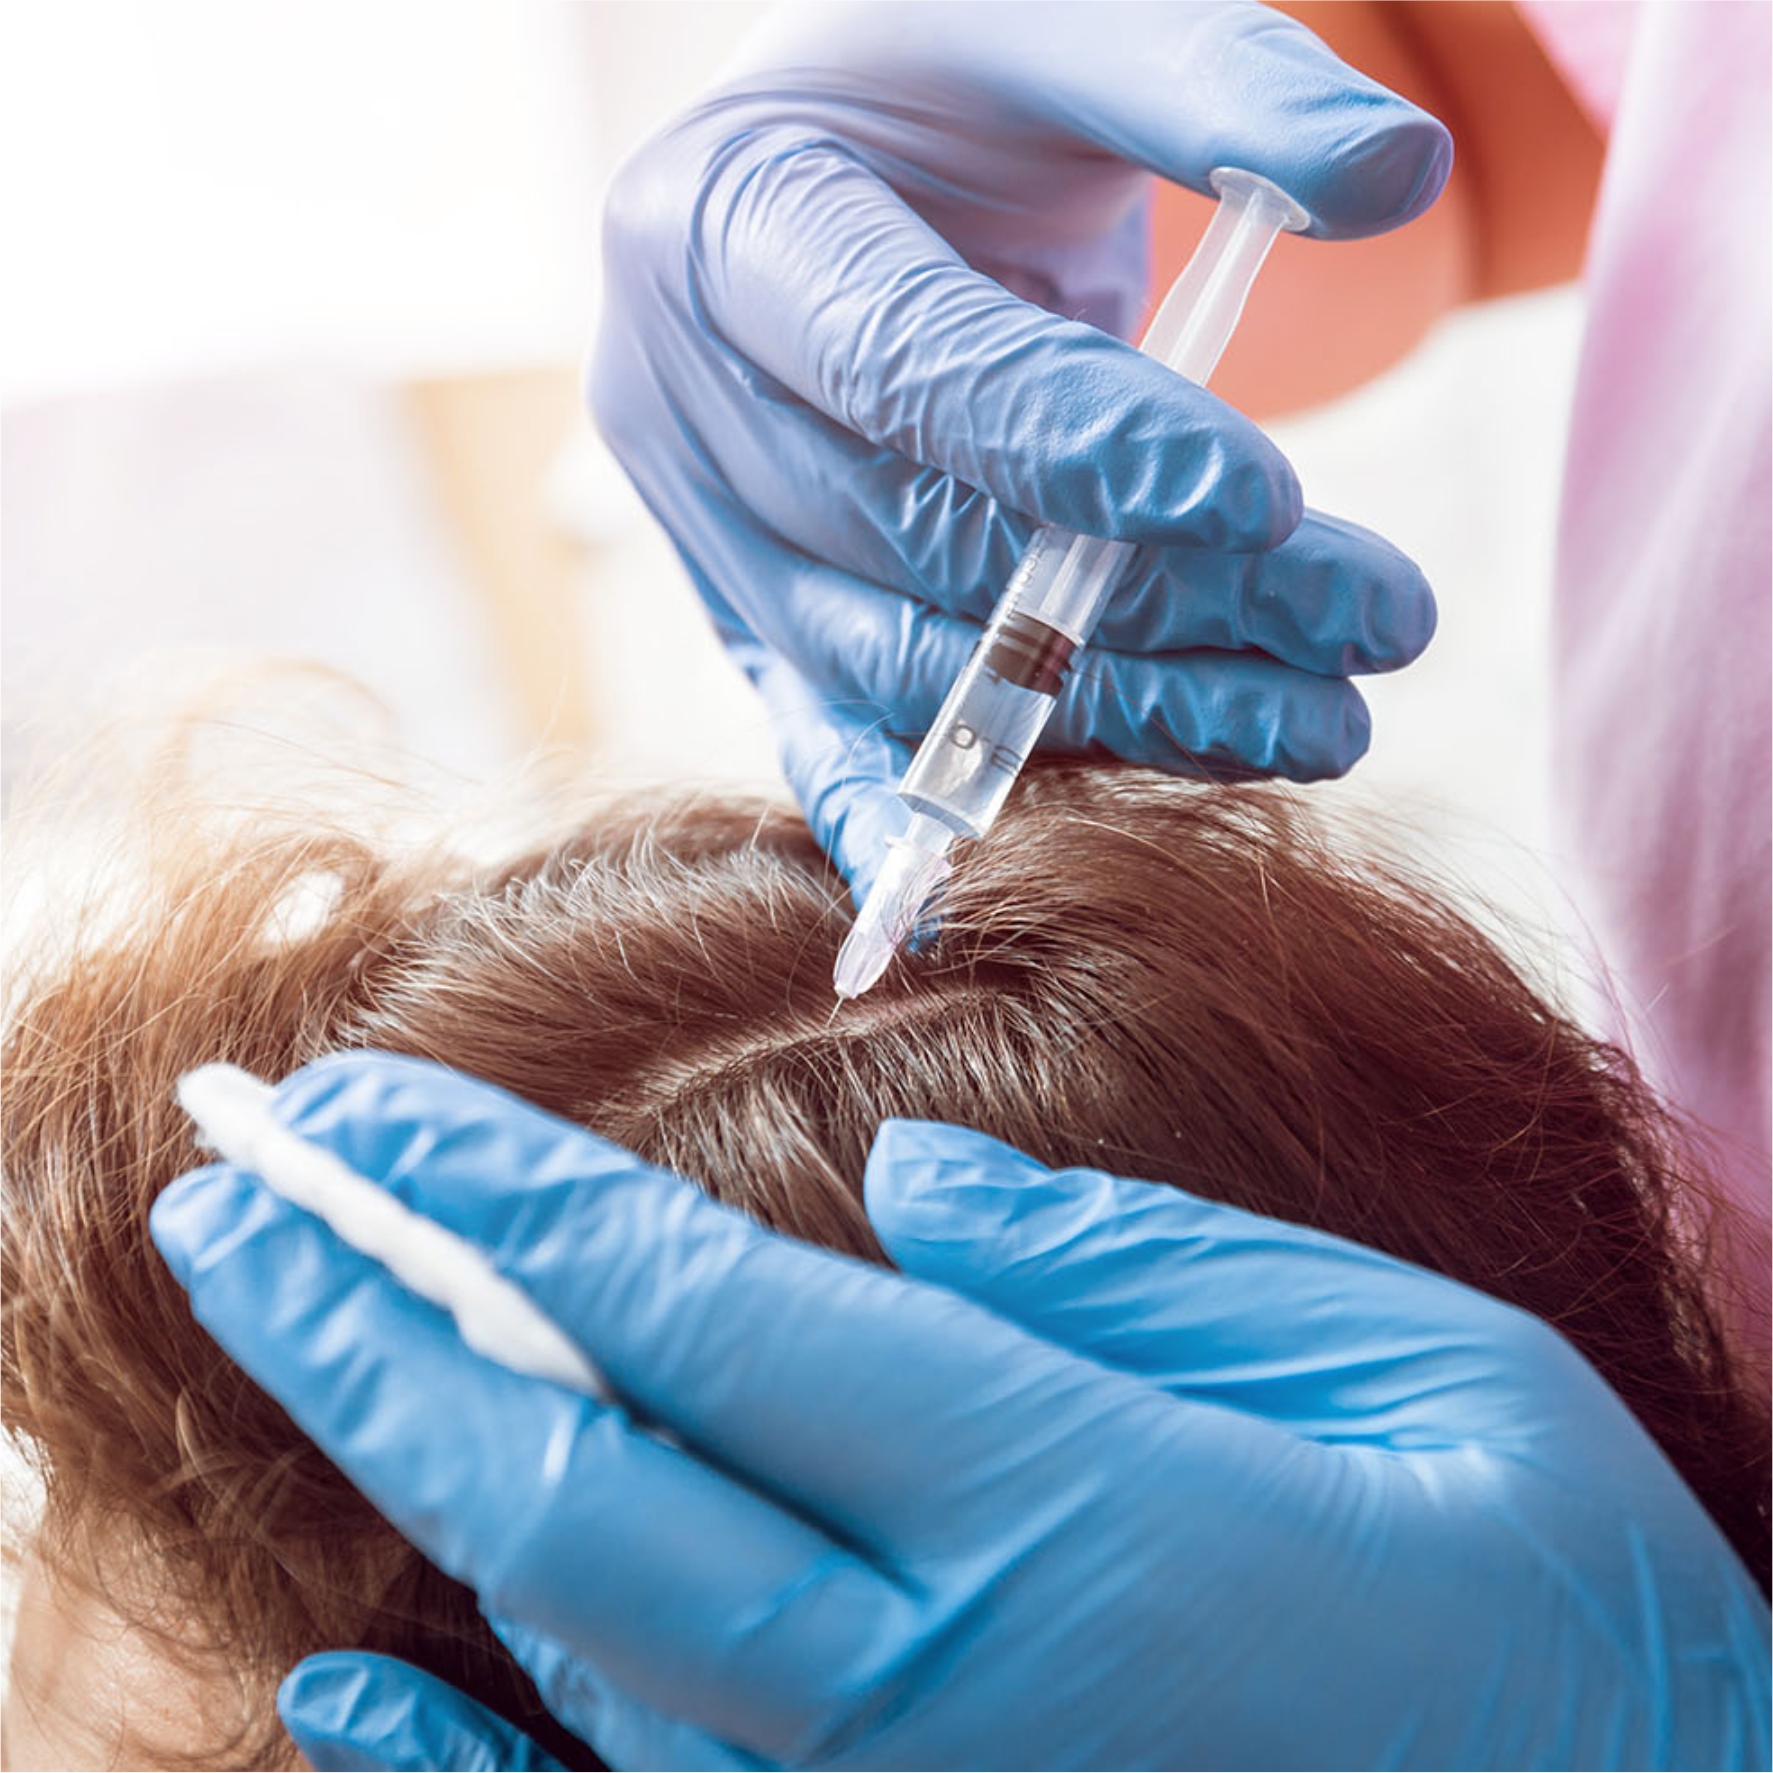 آخرین نتایج علمی نشان دهنده تاثیر مثبت پلاسمای غنی از پلاکت   (PRP) در درمان ریزش مو می باشد